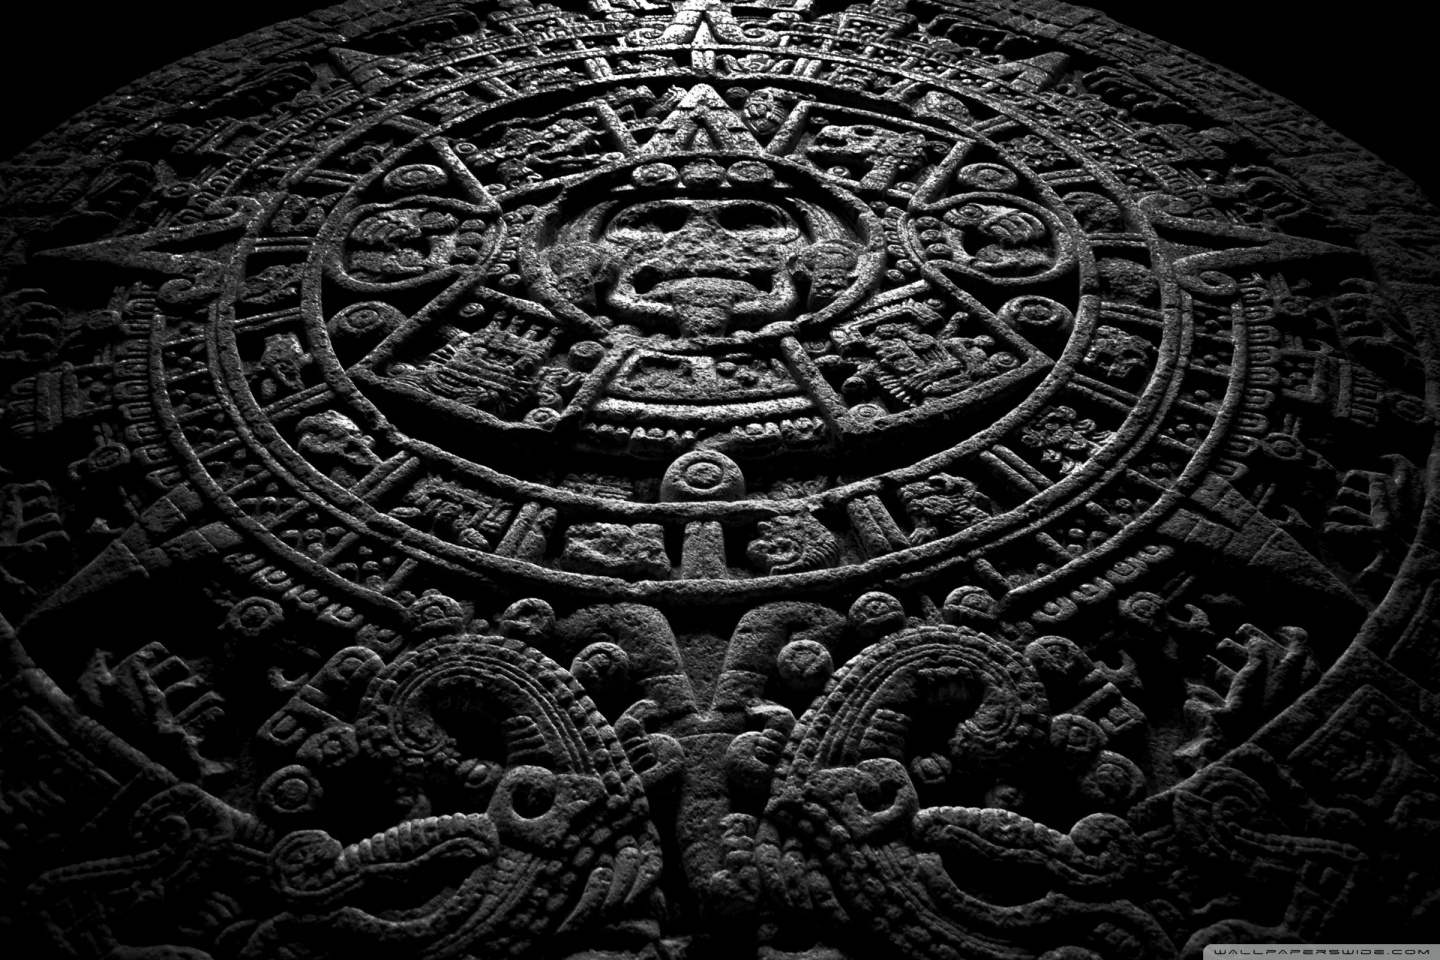 Mayan Calendar 2012 HD desktop wallpaper High Definition